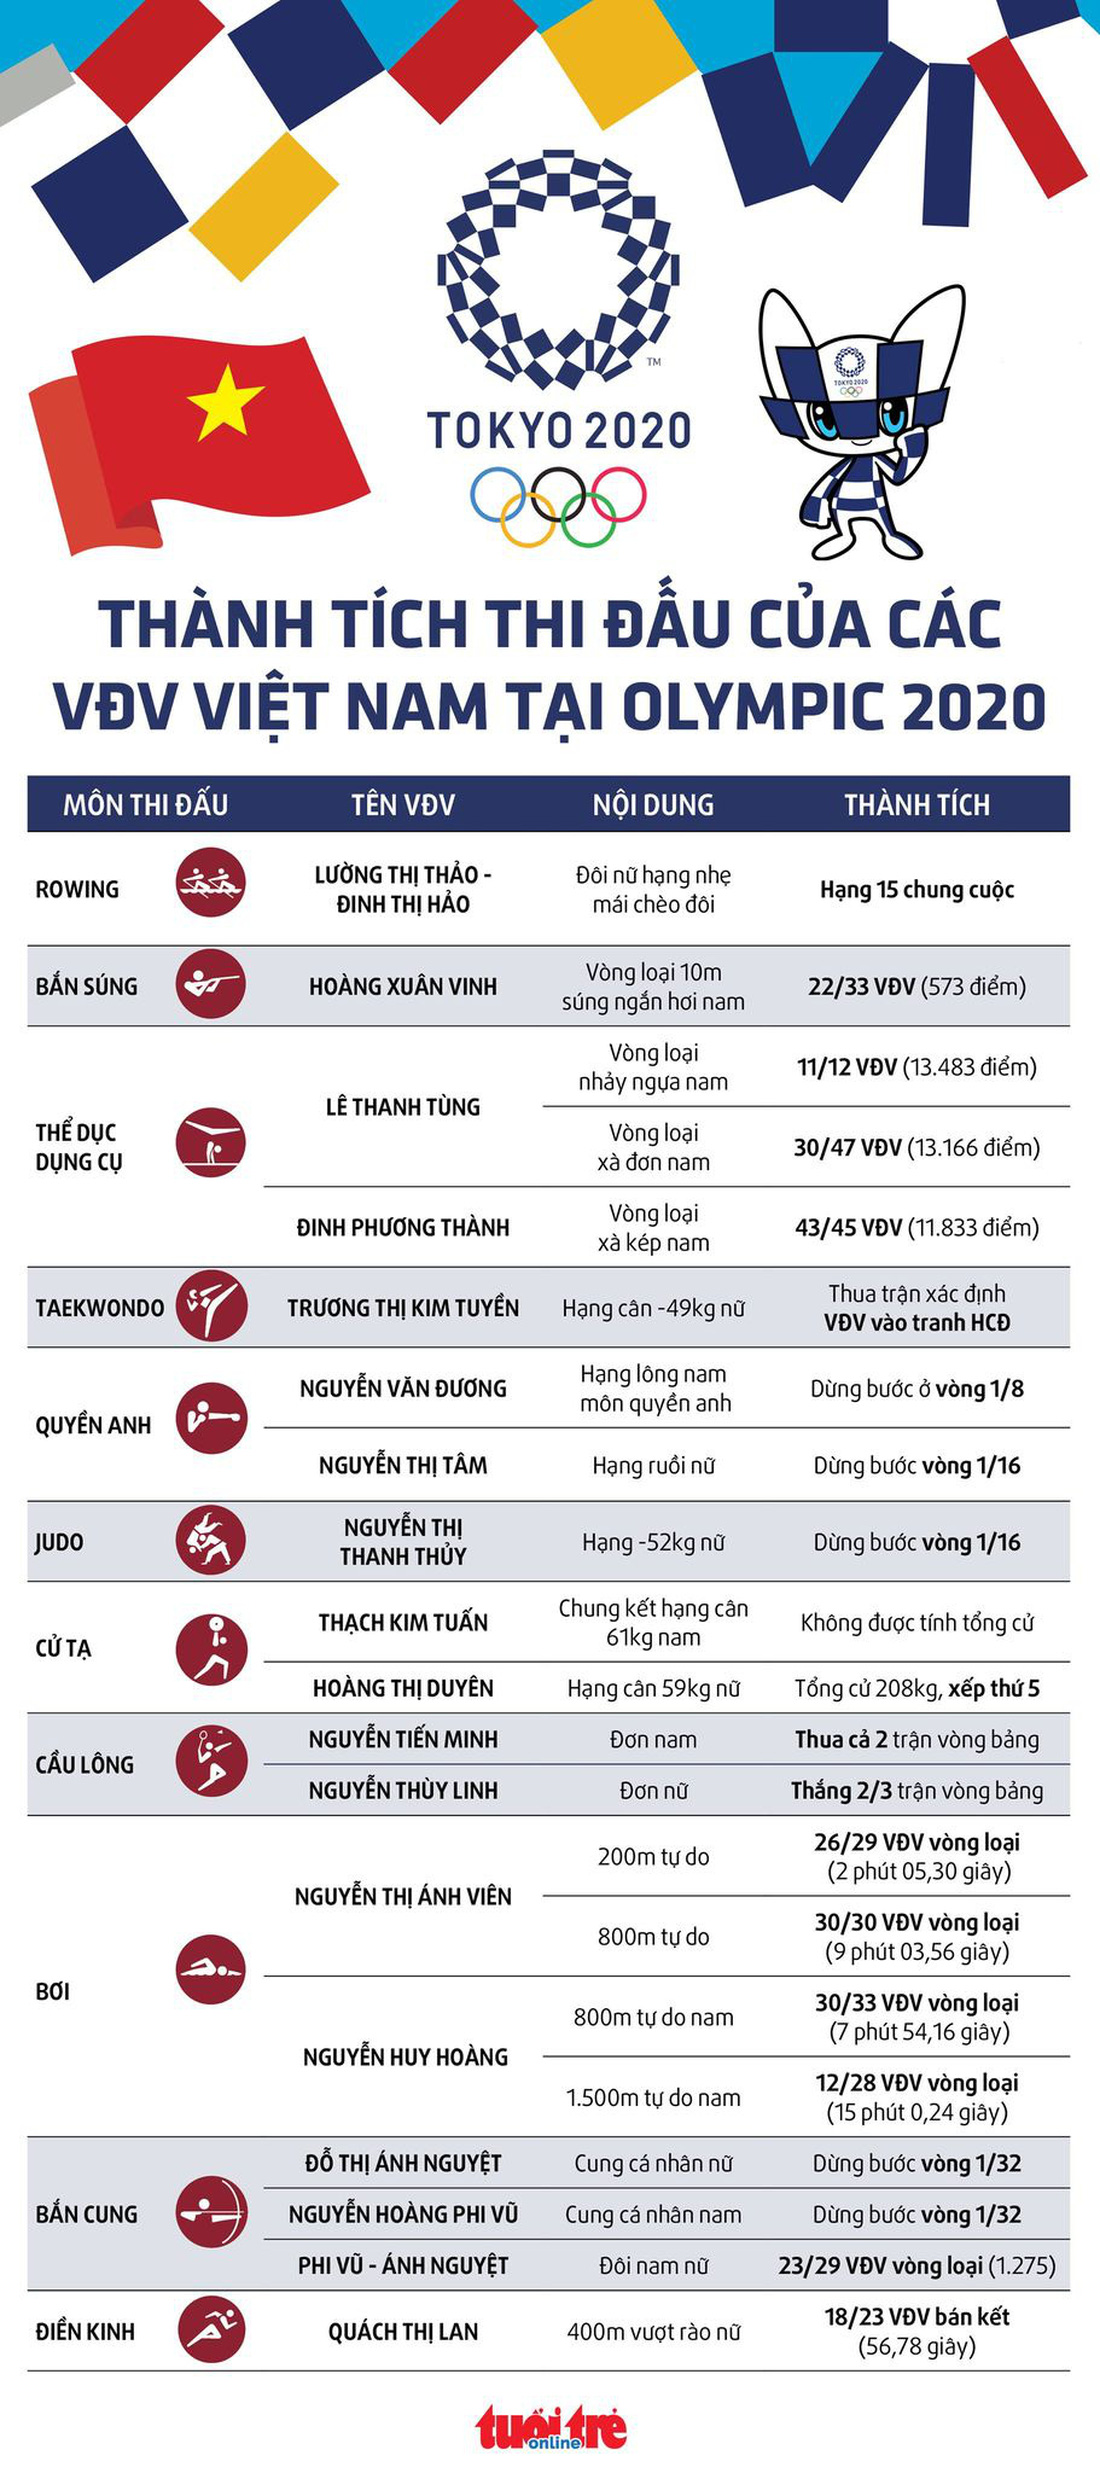 Dễ theo dõi: Kết quả thi đấu của 18 VĐV Việt Nam tại Olympic 2020 - Ảnh 1.